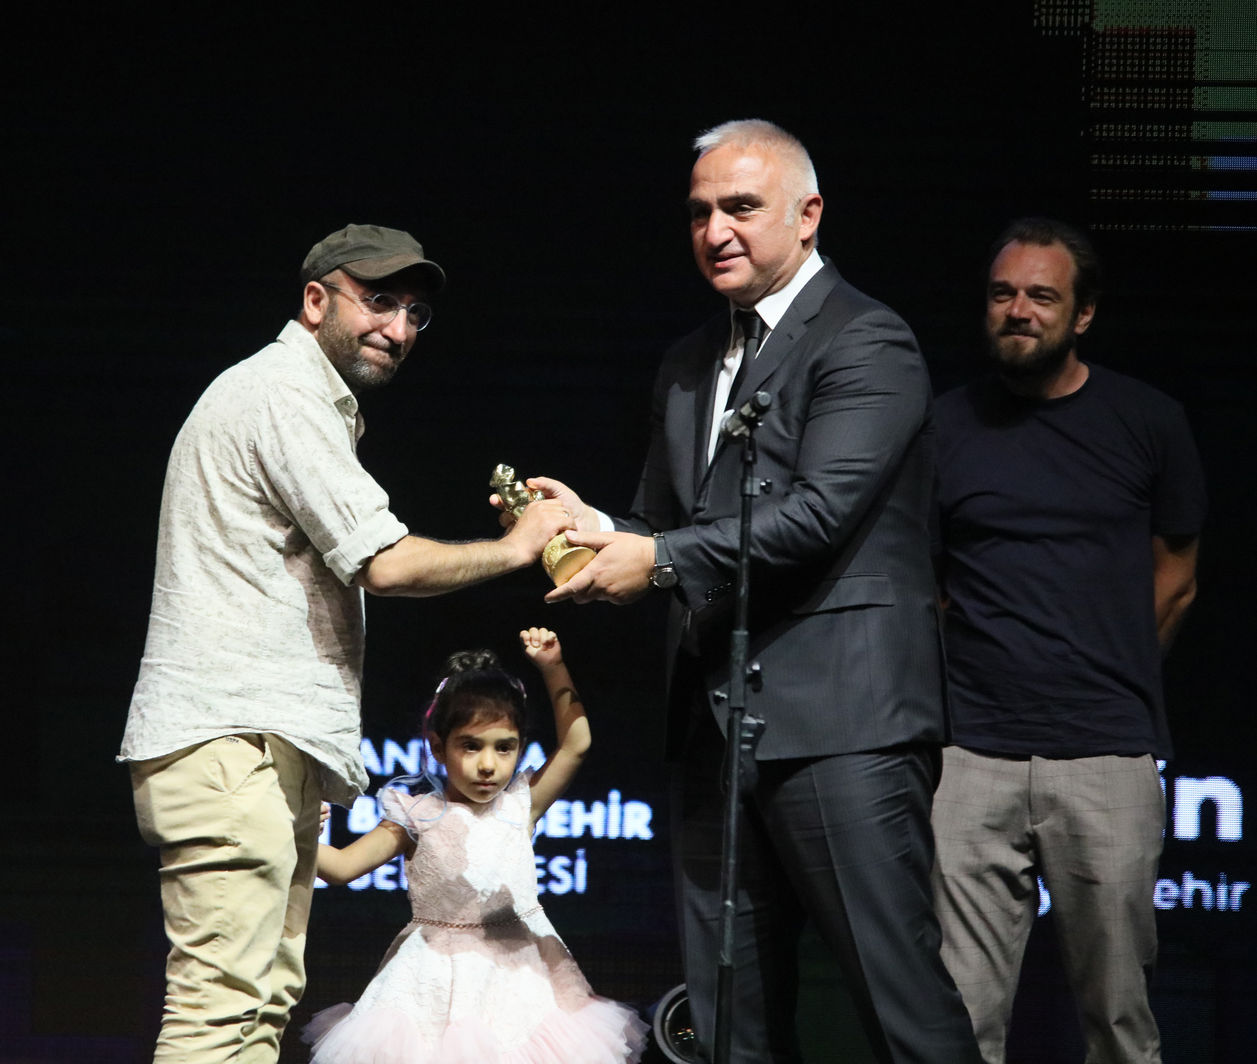 Ferit Karahan, Antalya Film Festivali'nde ödülünü Kültür ve Turizm Bakanı Mehmet Nuri Ersoy'un elinden aldı. Karahan, sahneye kızıyla birlikte çıktı. 